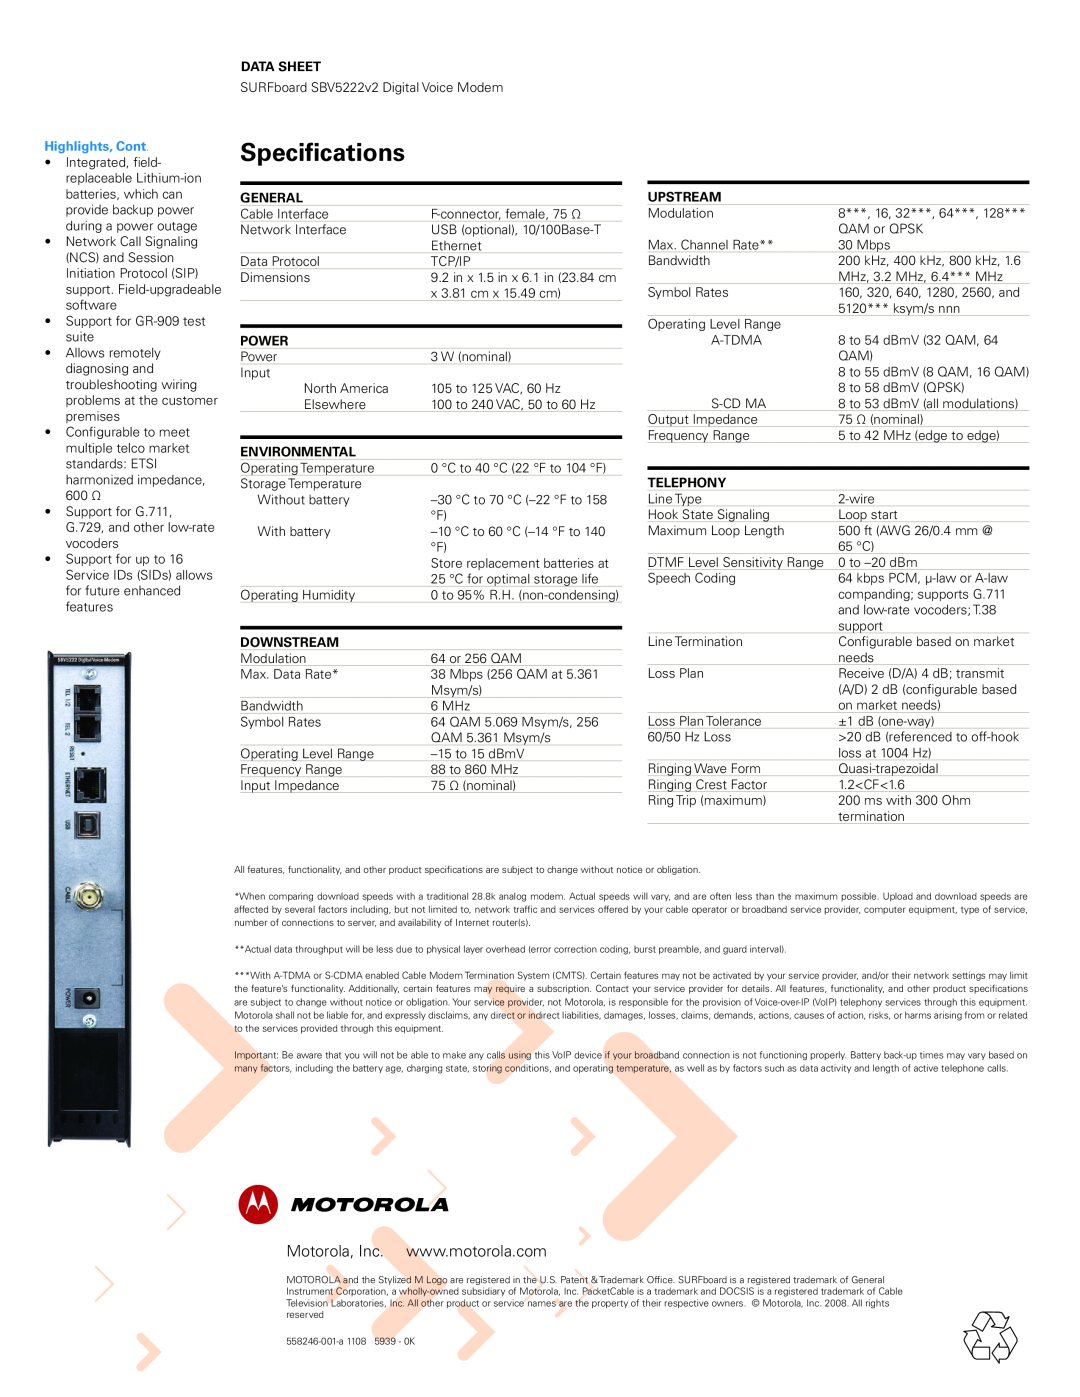 Motorola SBV5222v2 manual Specifications, Data Sheet, Highlights, Cont, general, power, environmental, downstream, upstream 